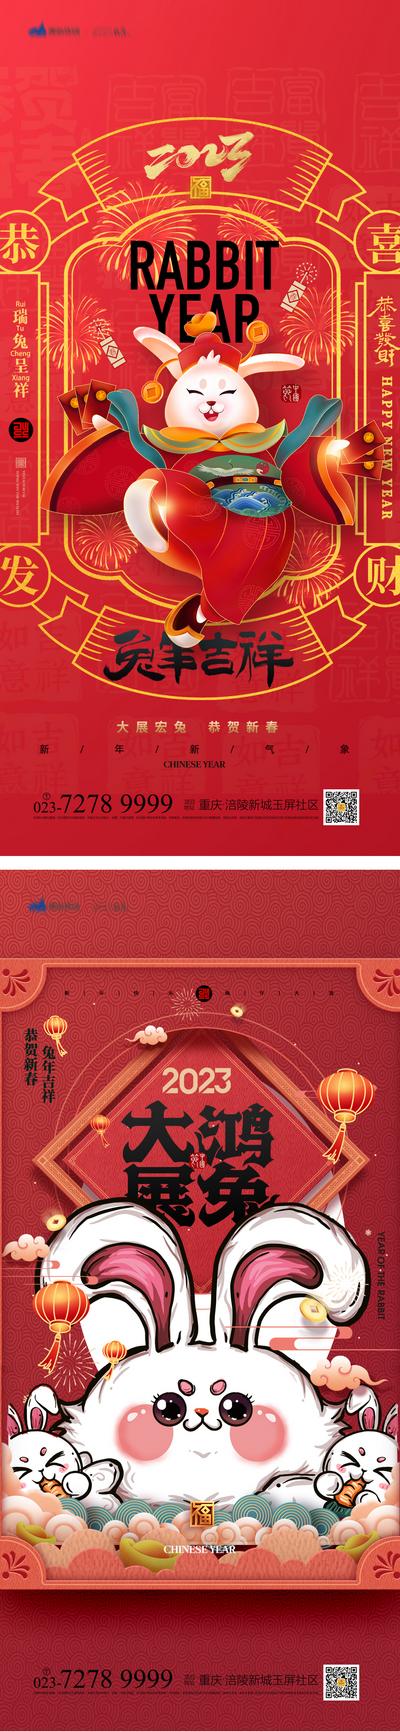 【南门网】海报 中国传统节日 春节 新春 新年快乐 兔年 玉兔迎春 兔子 红色 喜庆 系列